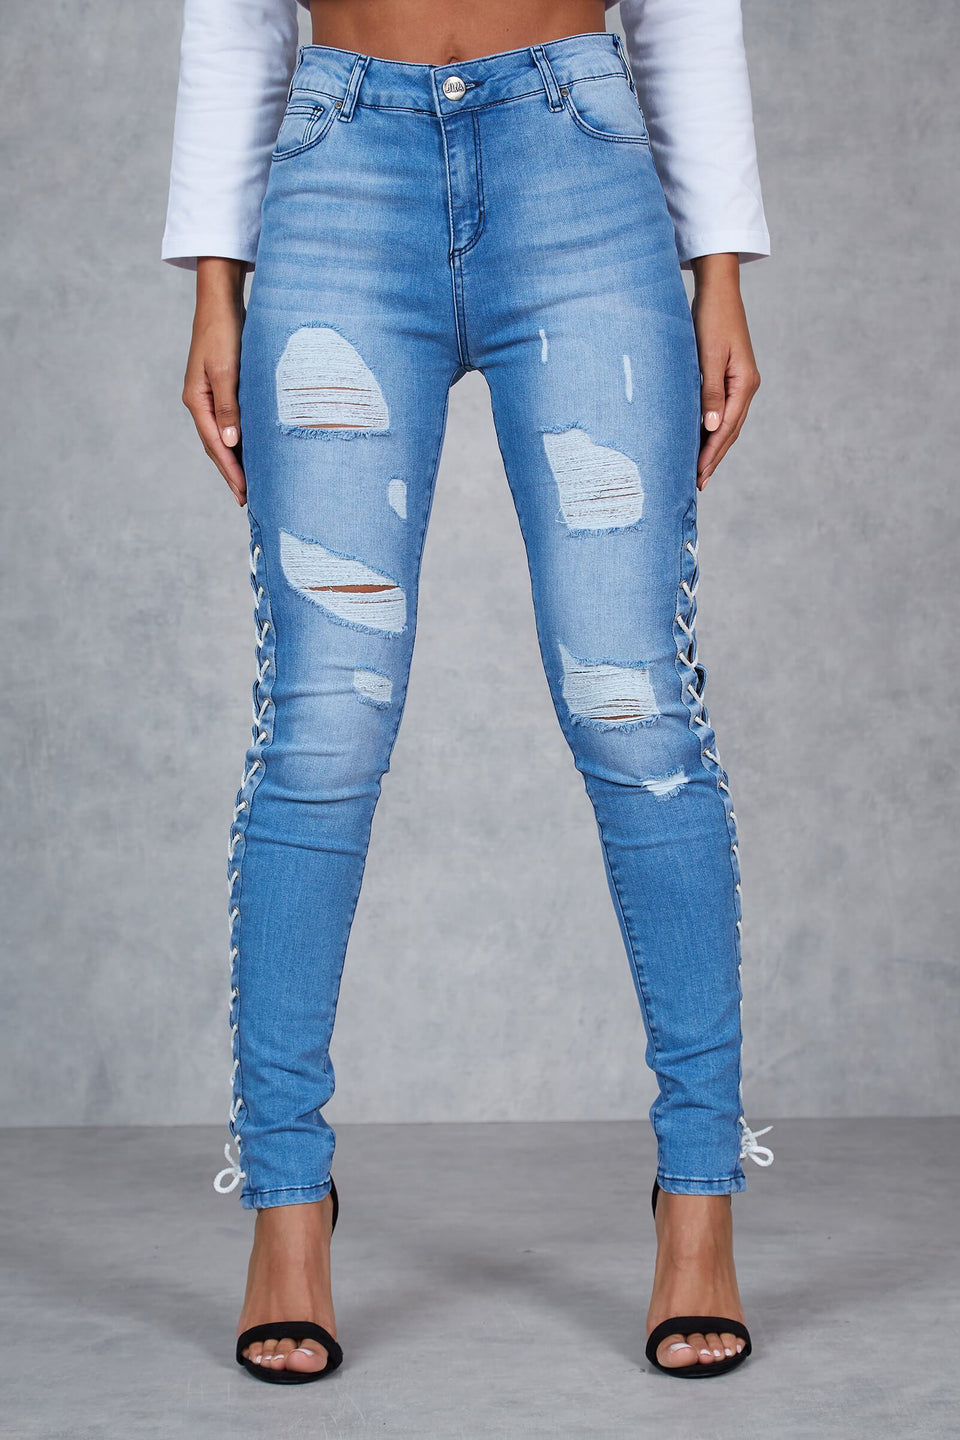 Carver Side Split Skinny Jeans - Light Blue Wash